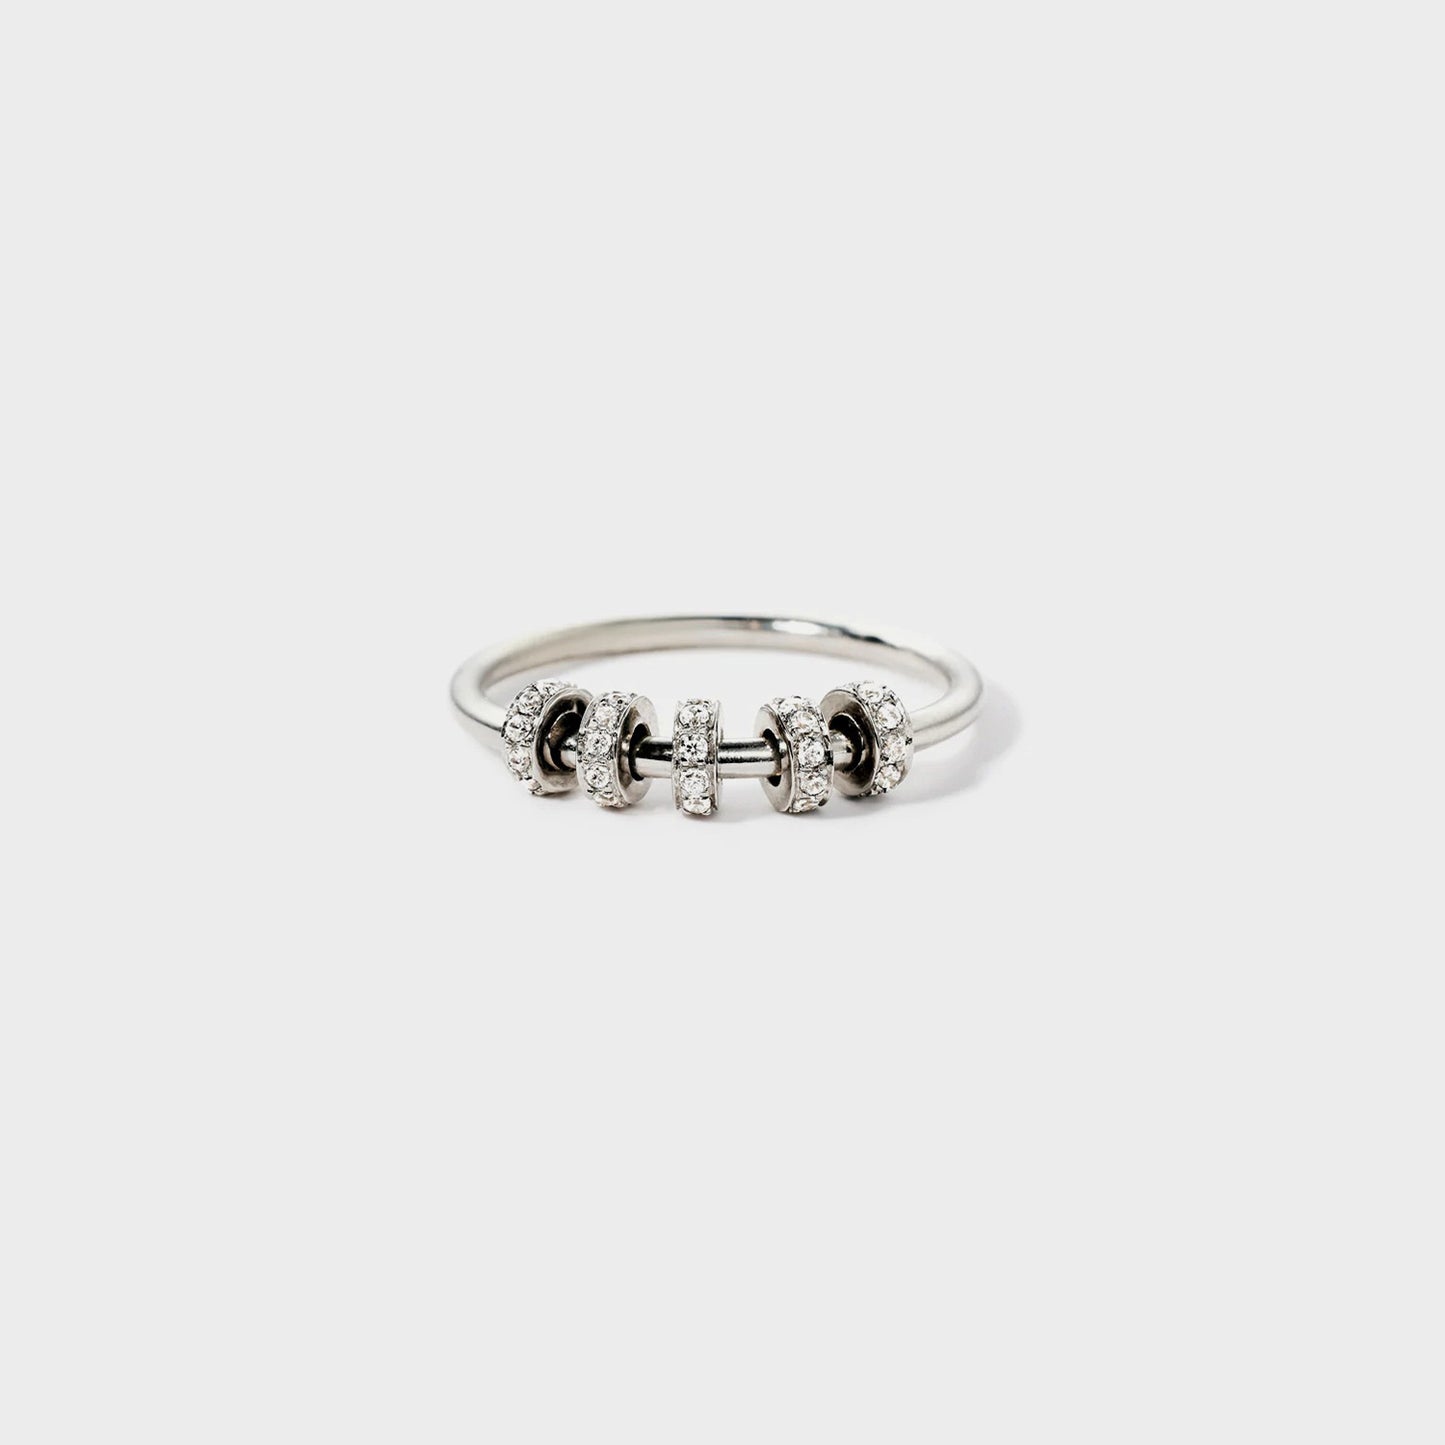 Ring aus 925er Sterlingsilber mit eingelegtem Zirkon